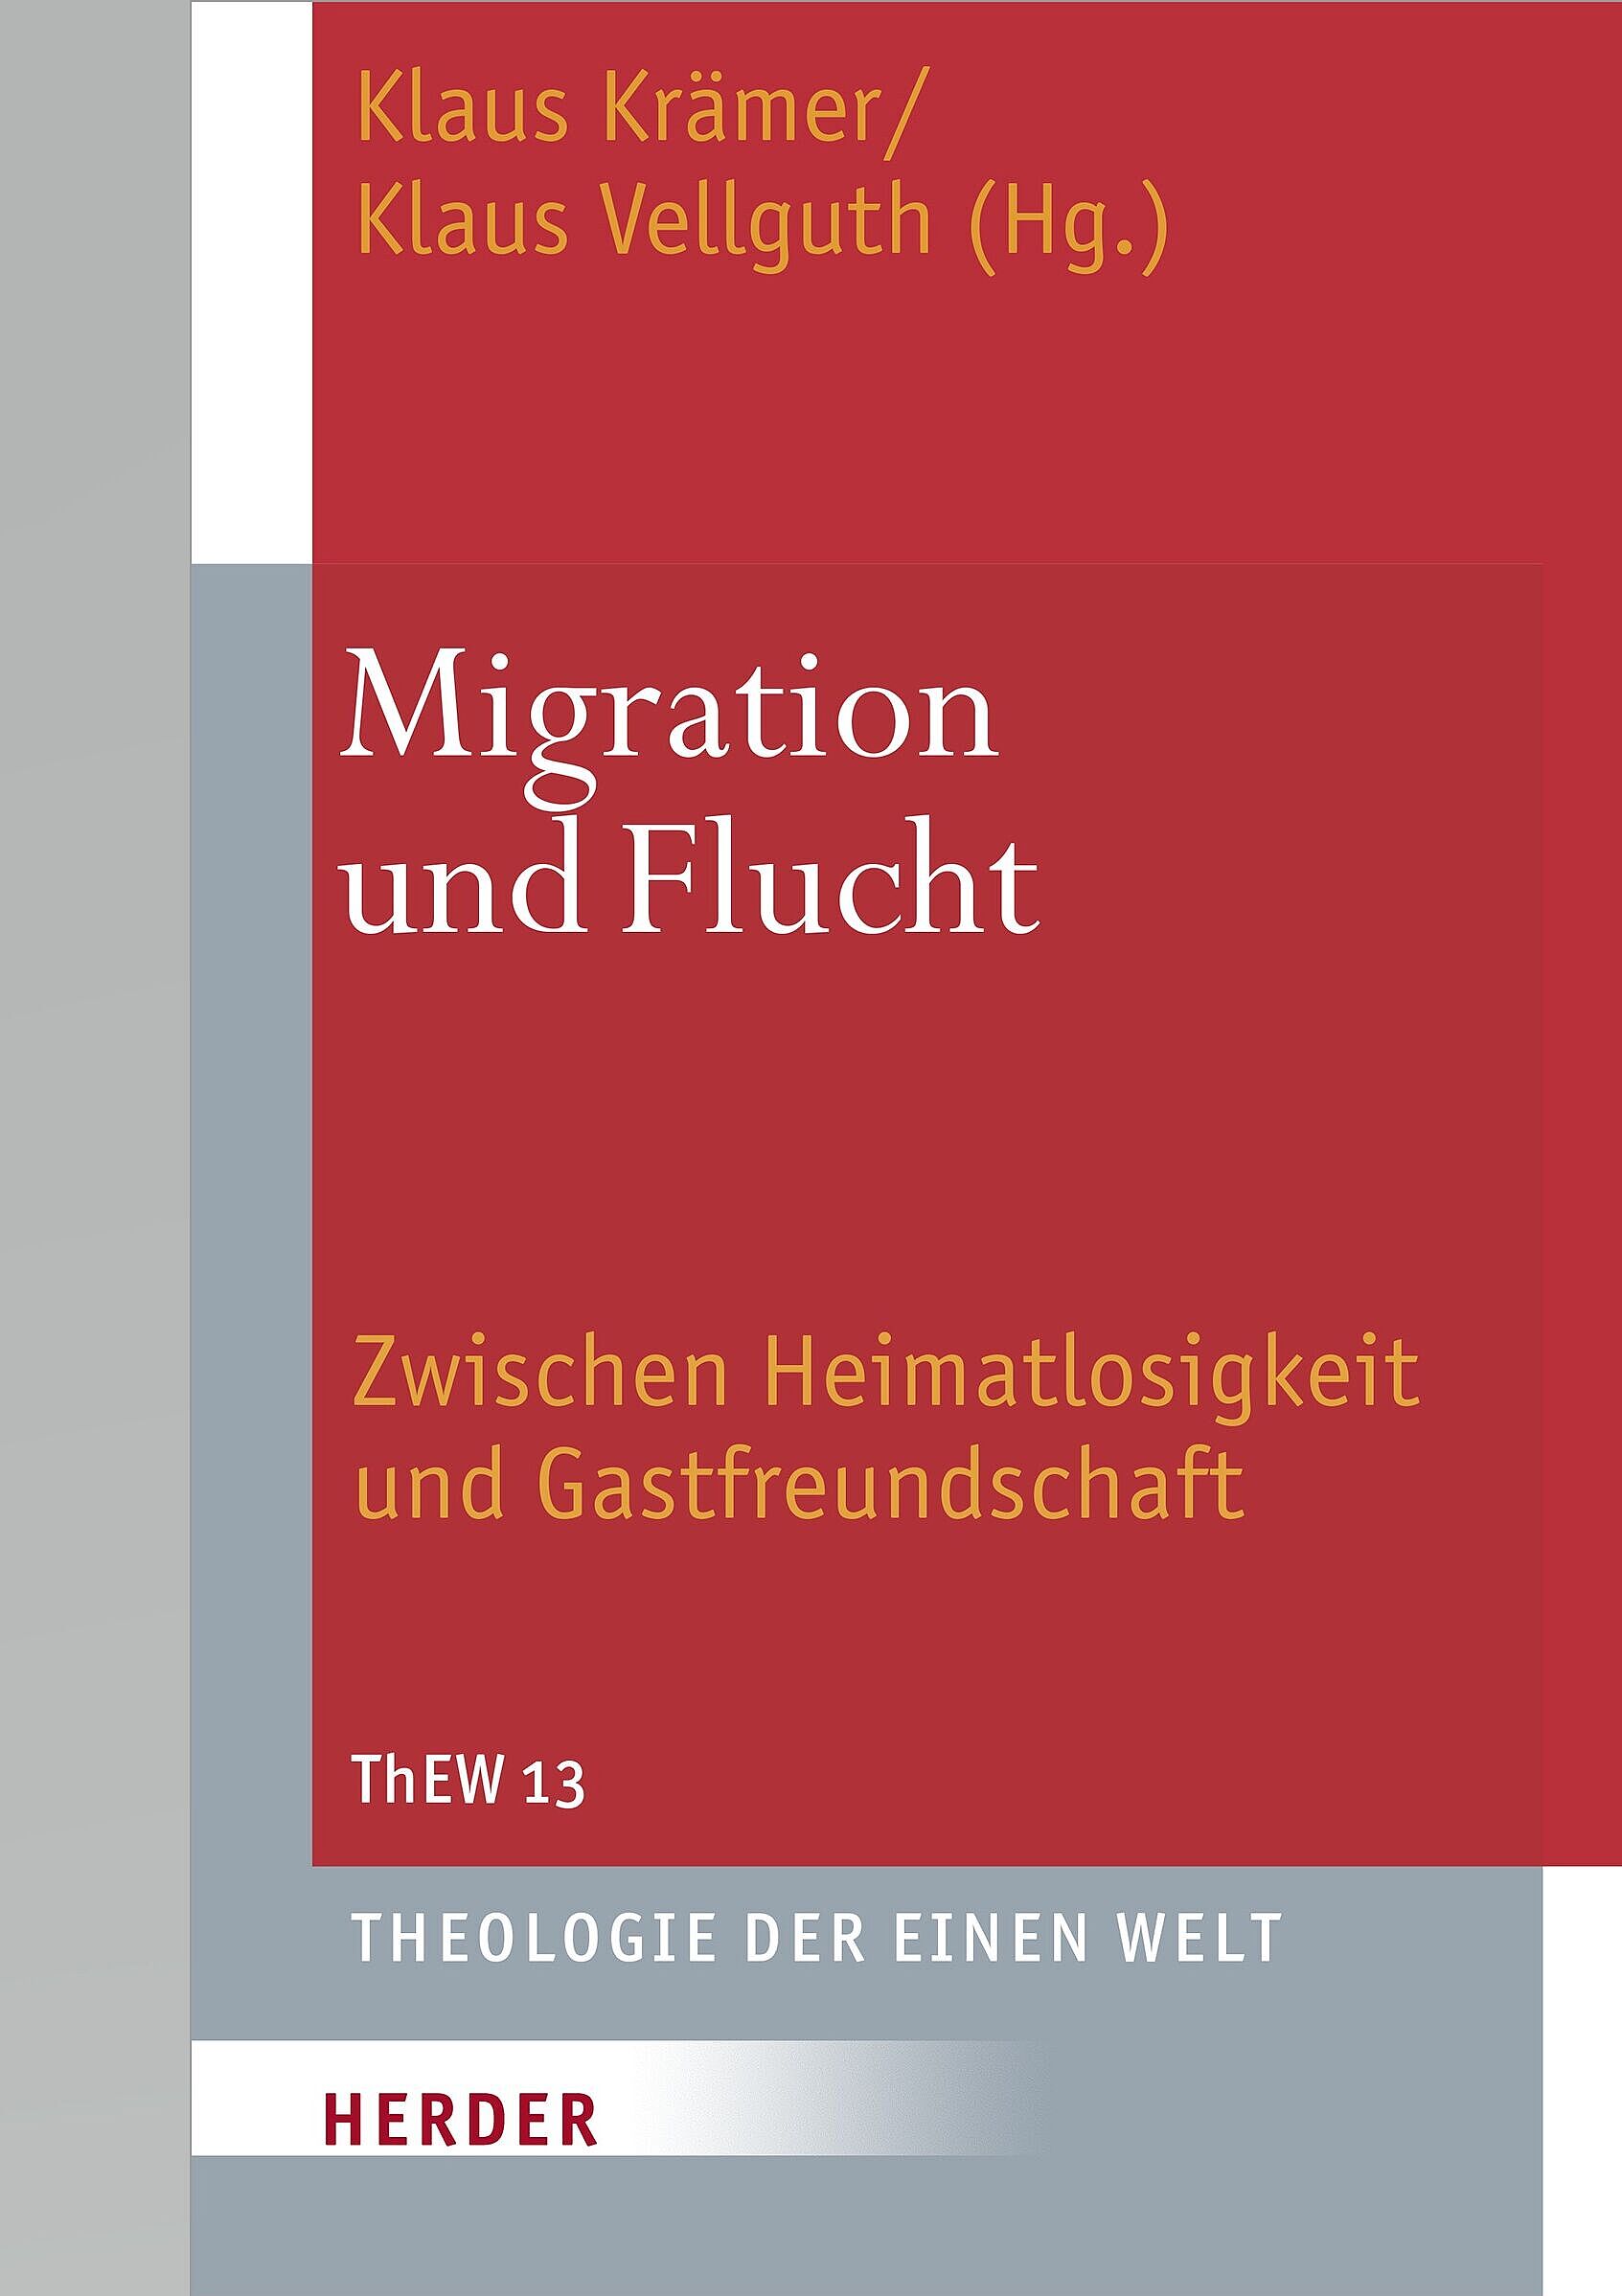 Theologie der Einen Welt (ThEW 13): Migration und Flucht